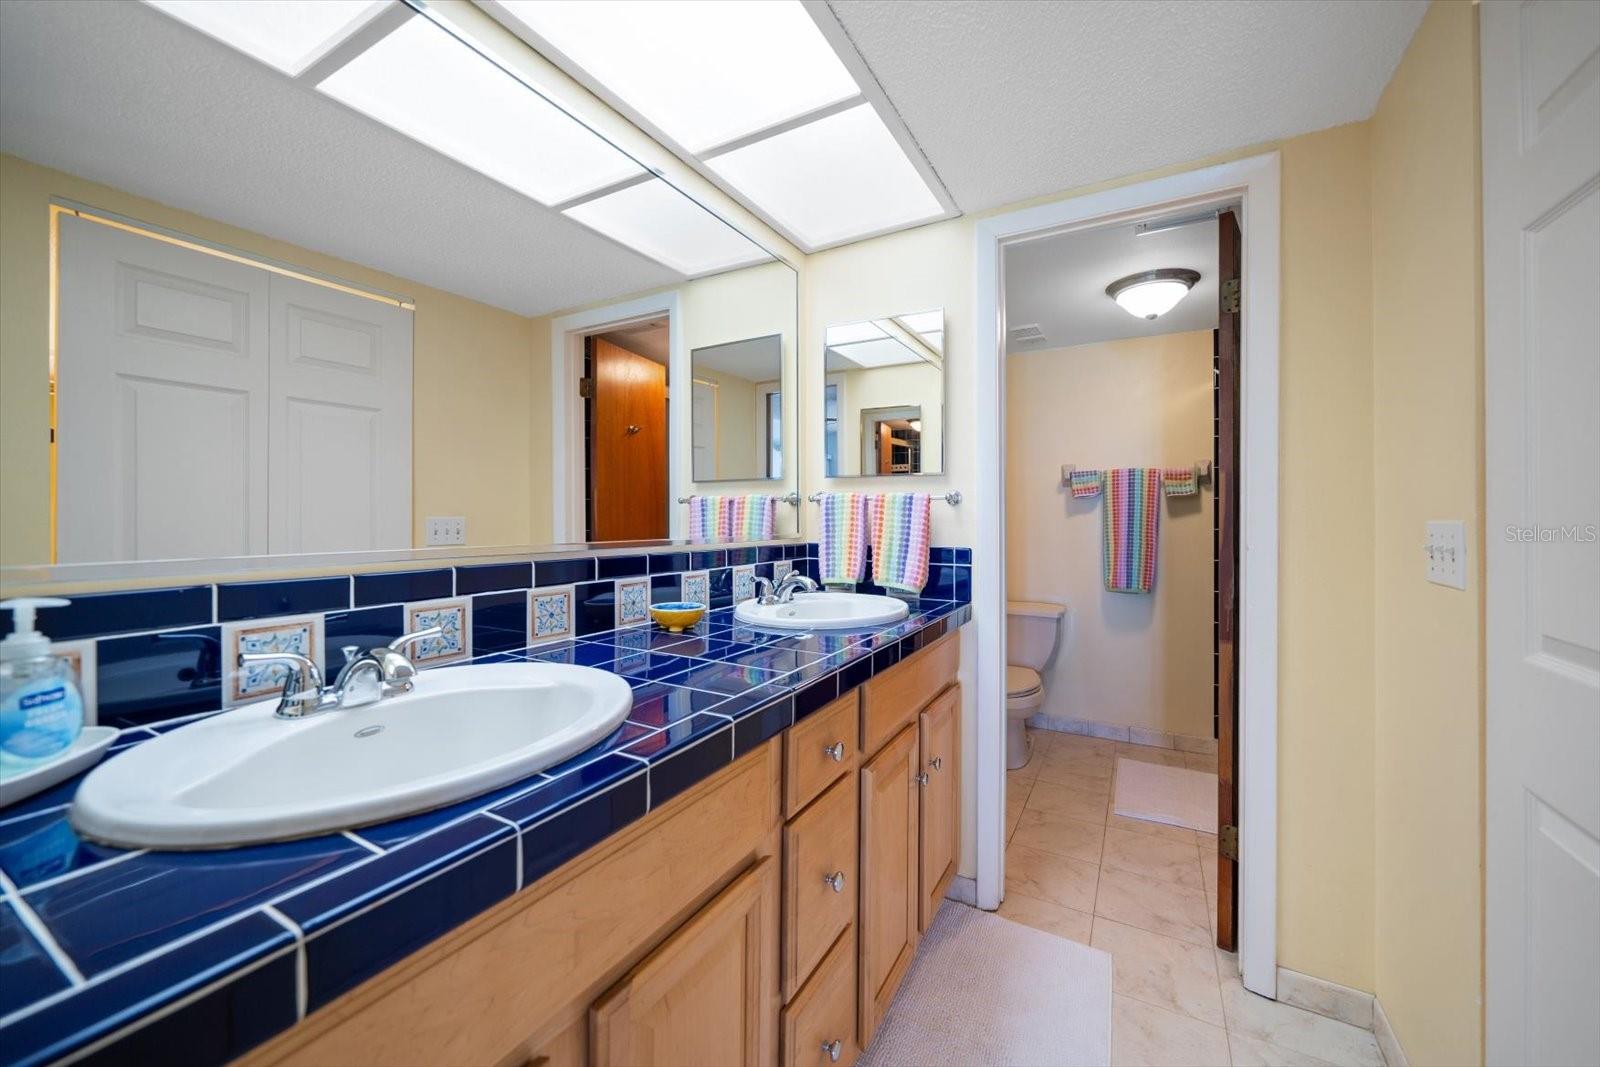 Master Bath has dual vanities in bathroom across from generous walkin closet.